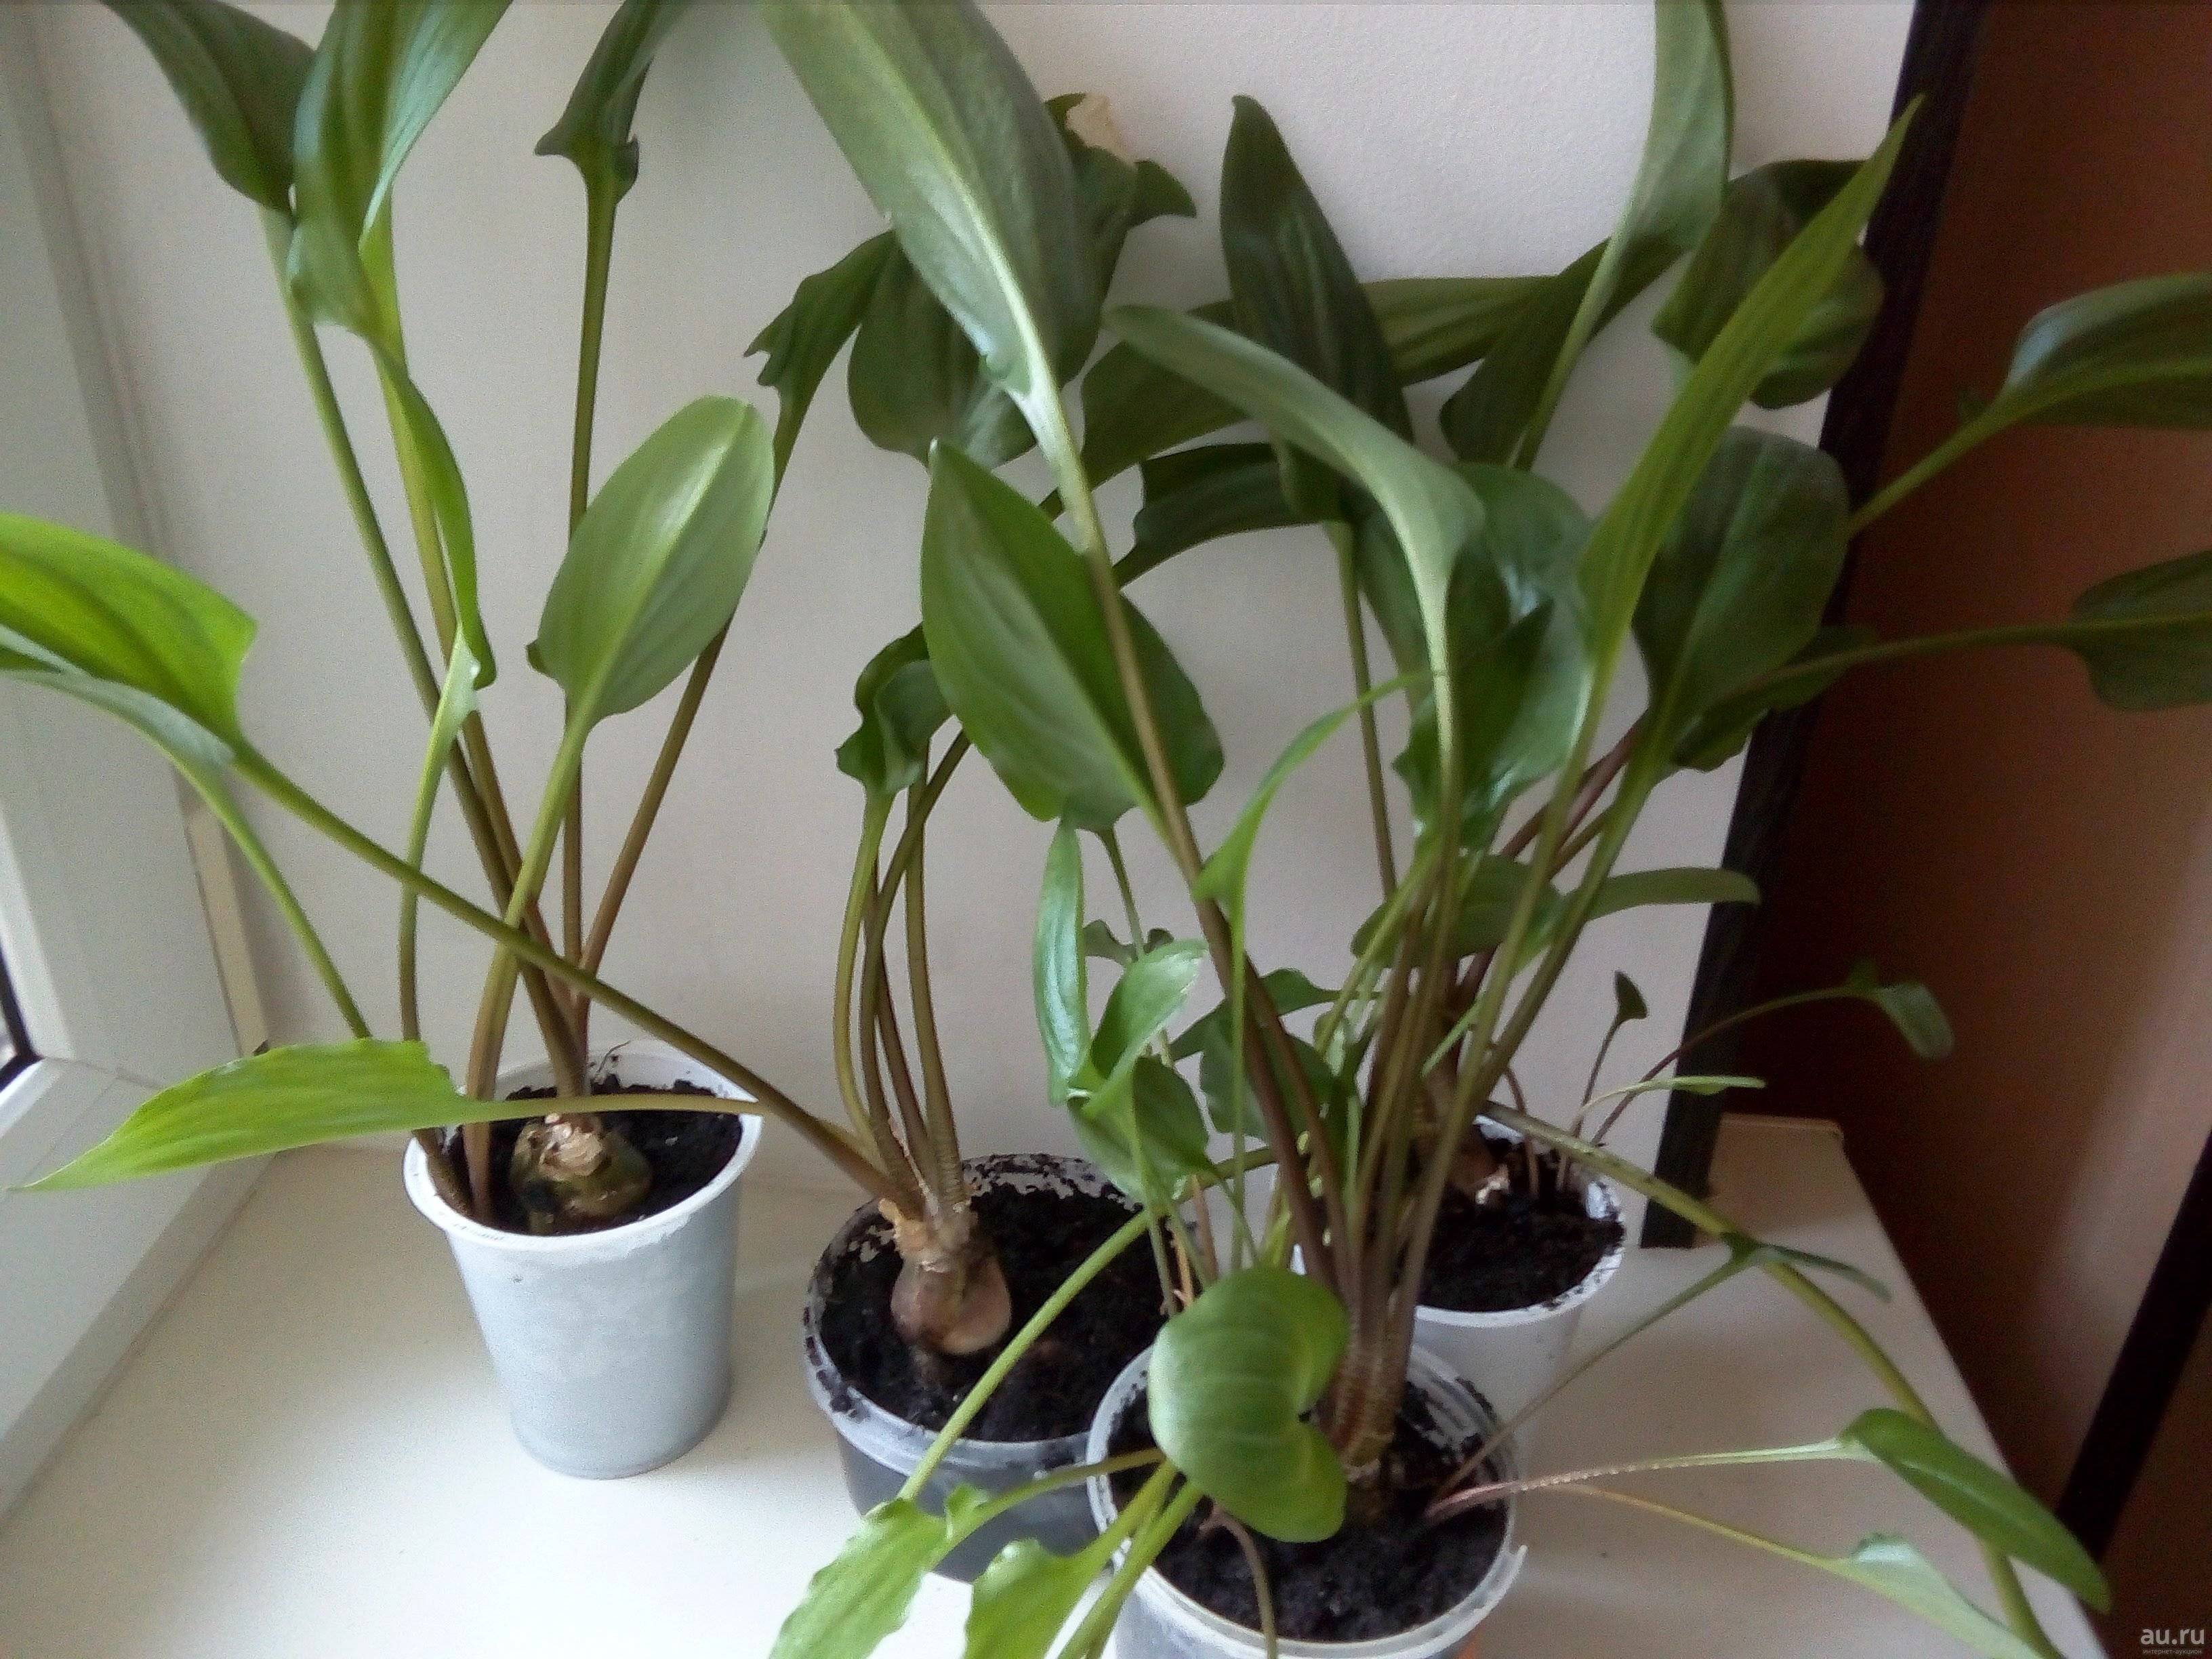 Яркая зелень дримиопсиса в квартире. особенности ухода и размножение цветка, его виды